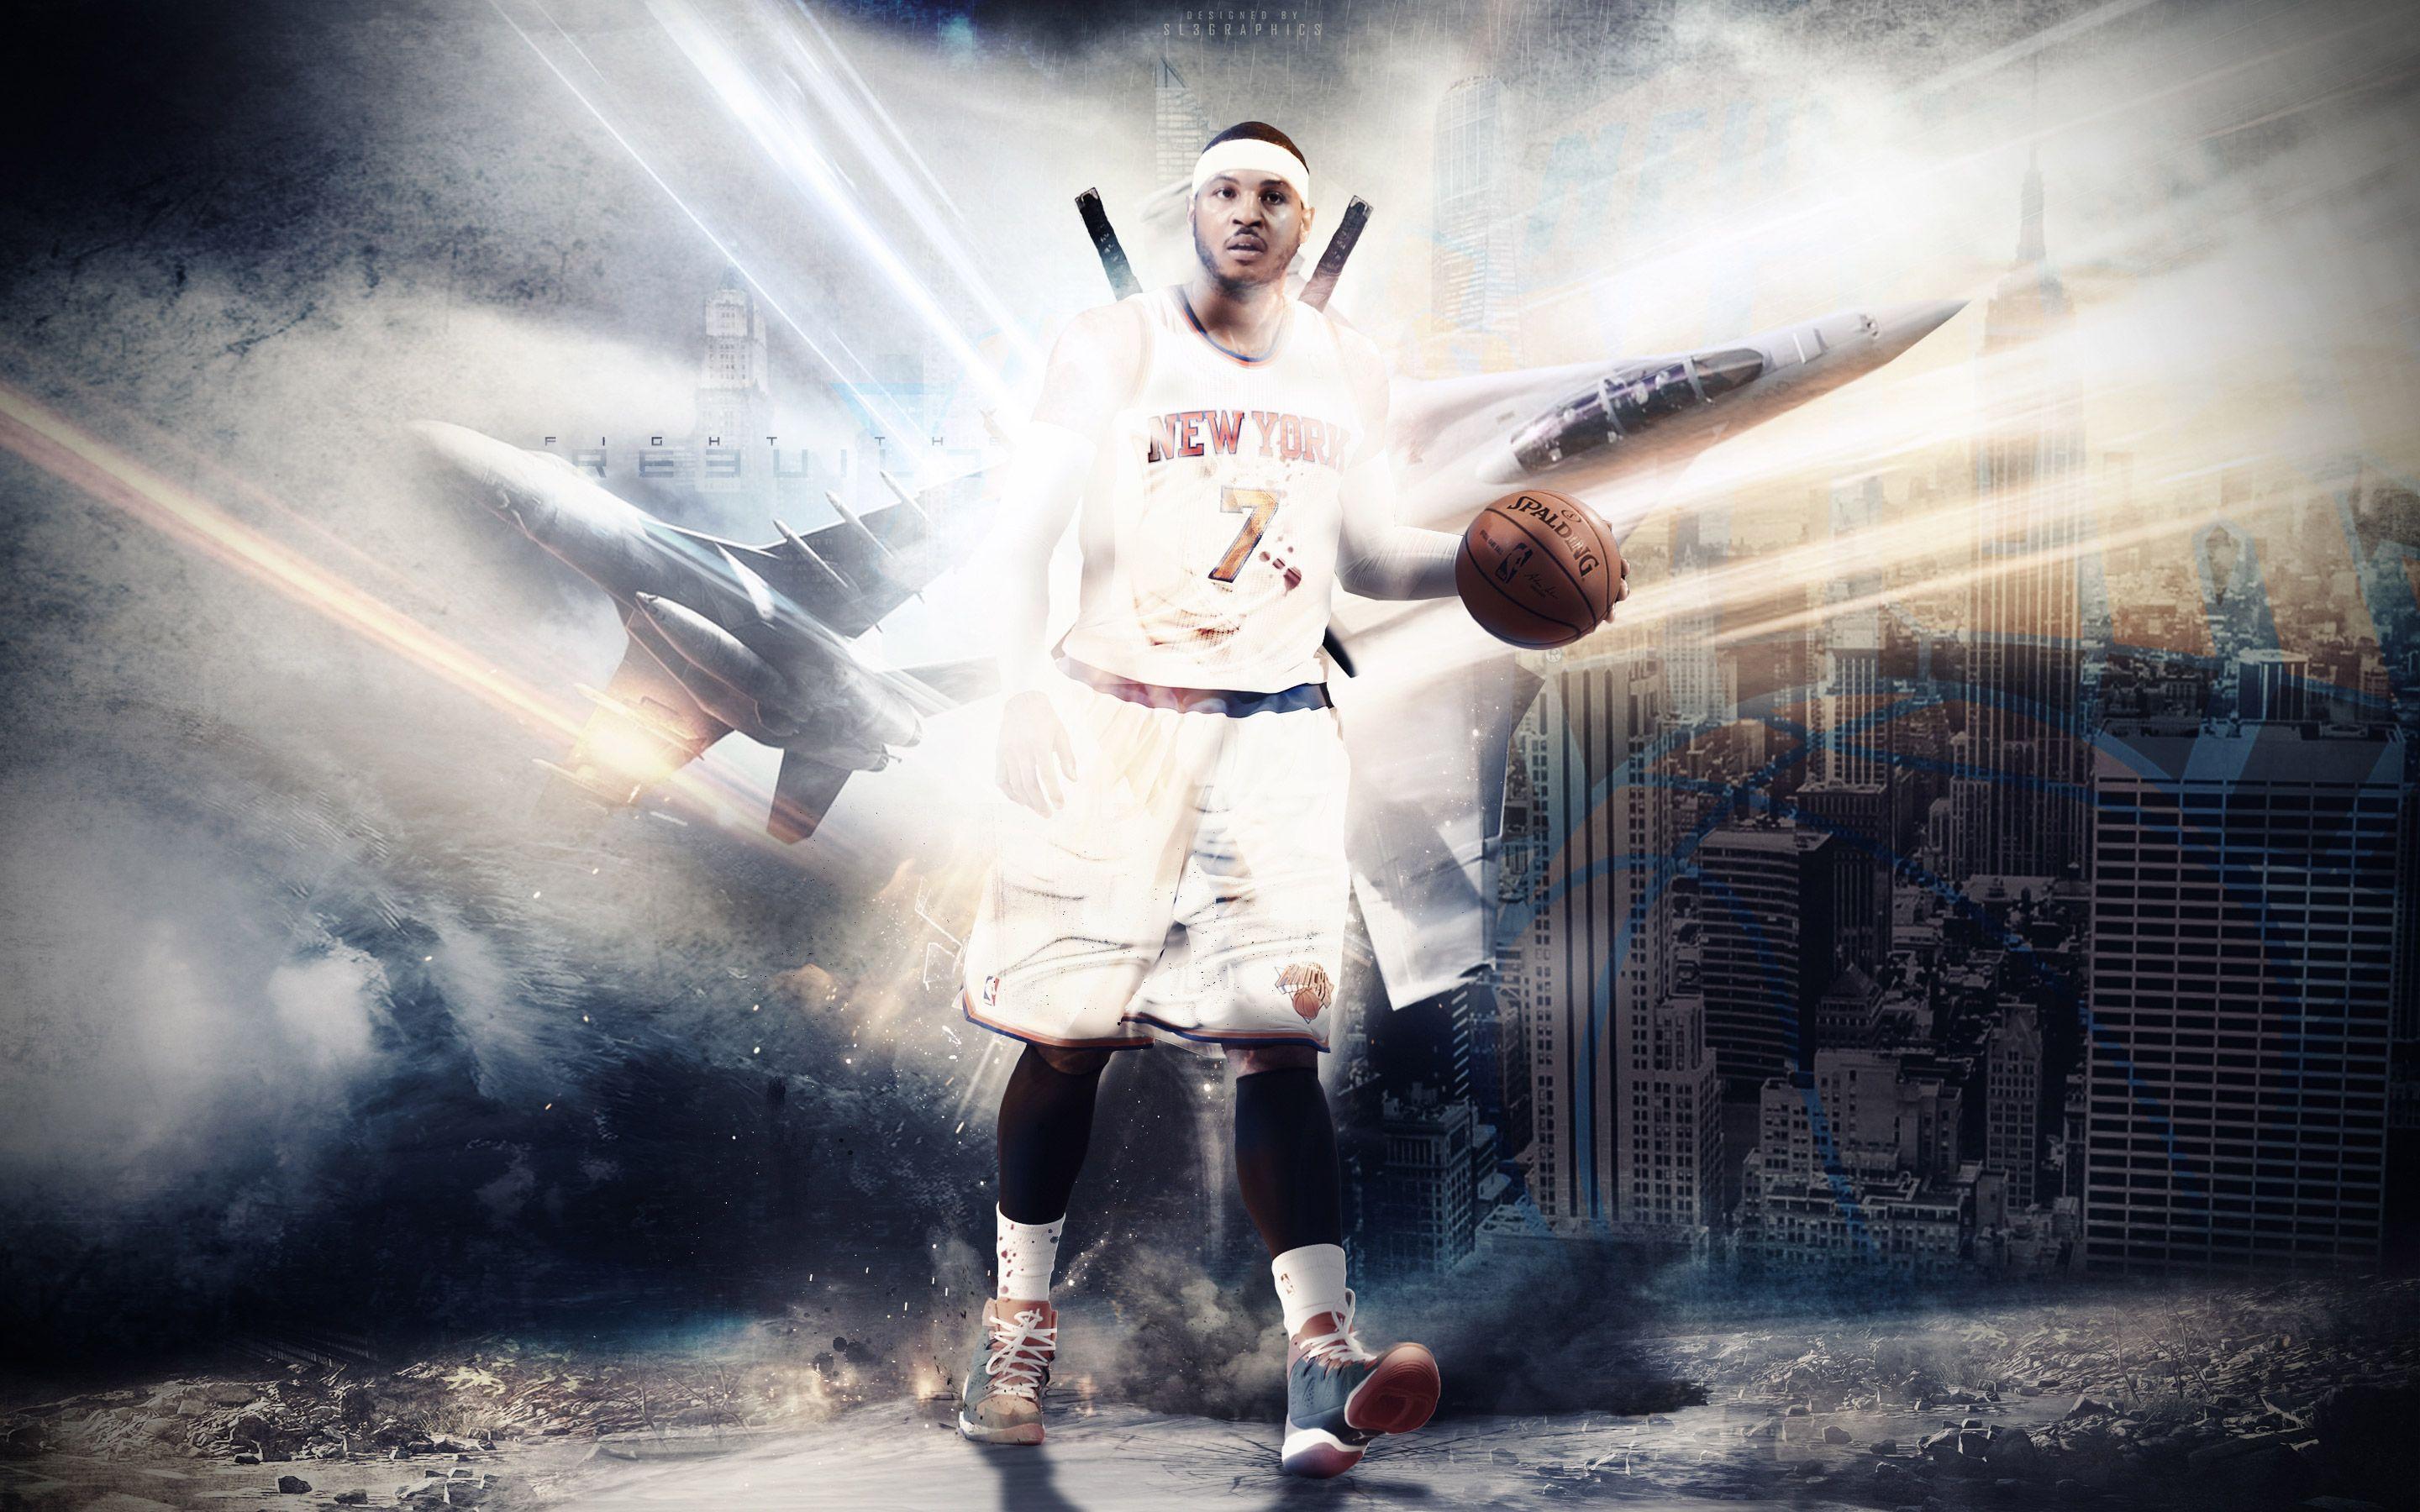 Melo NY Knicks 2015 Wallpaper